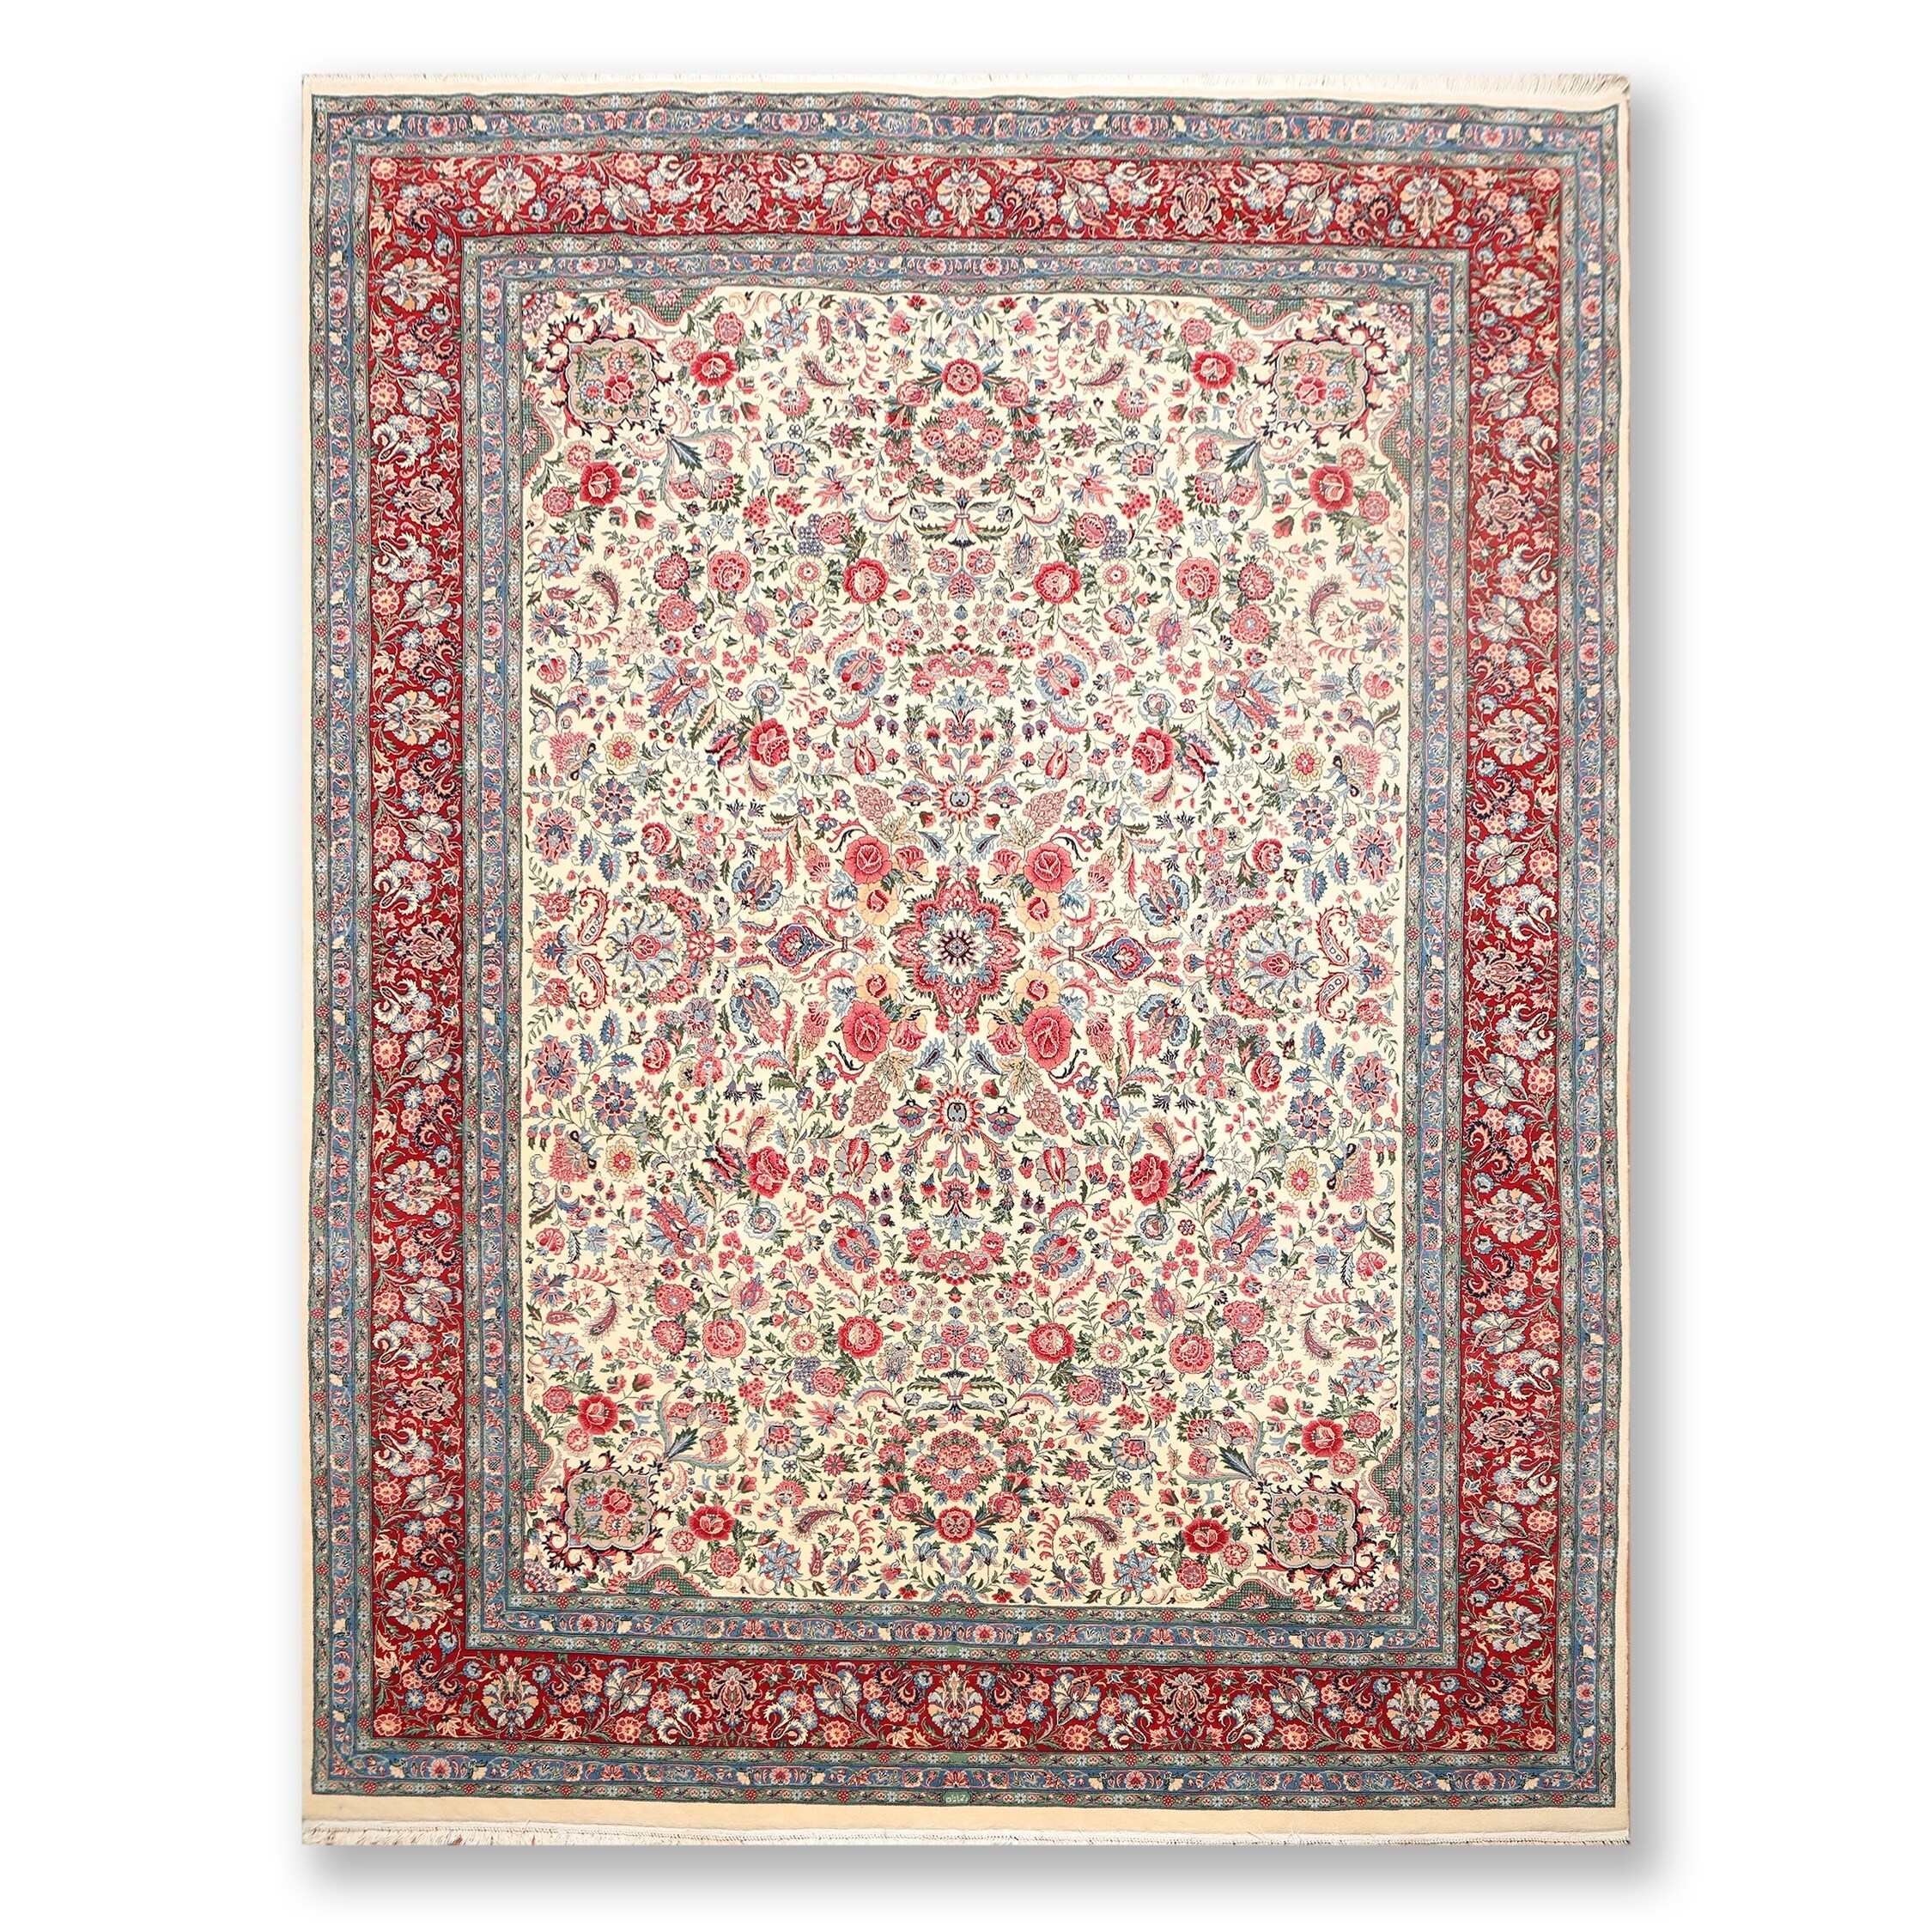 Persian Carpet, Qum Wool Carpet, Beautiful Carpet